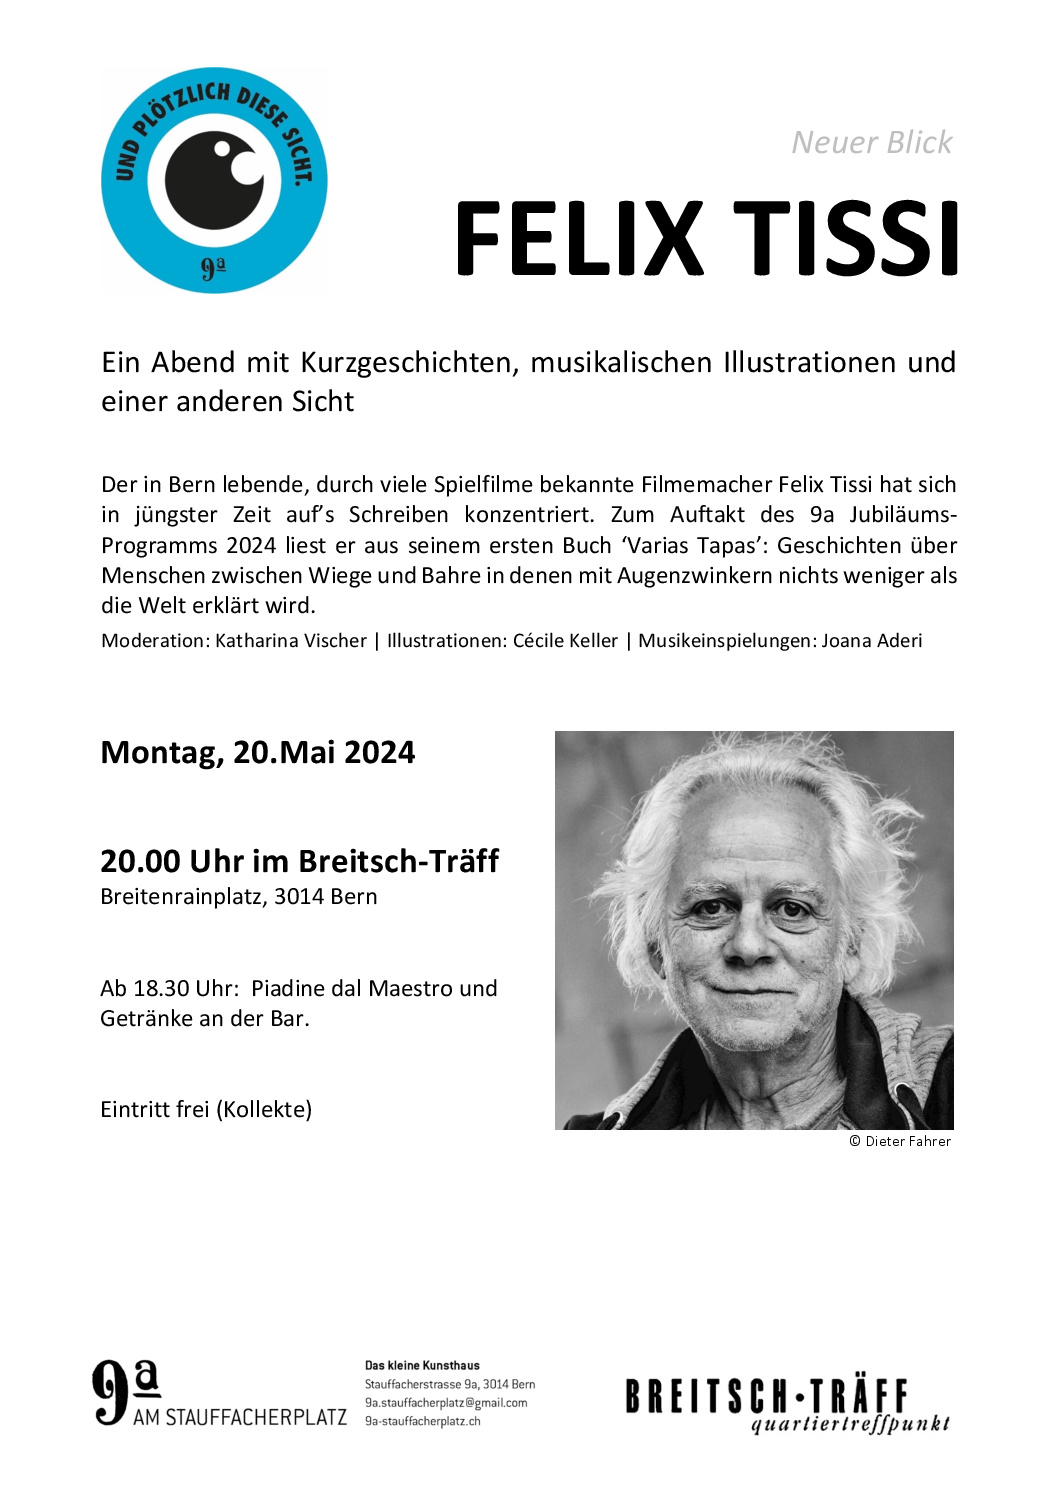 Felix Tissi - Die neue Sicht